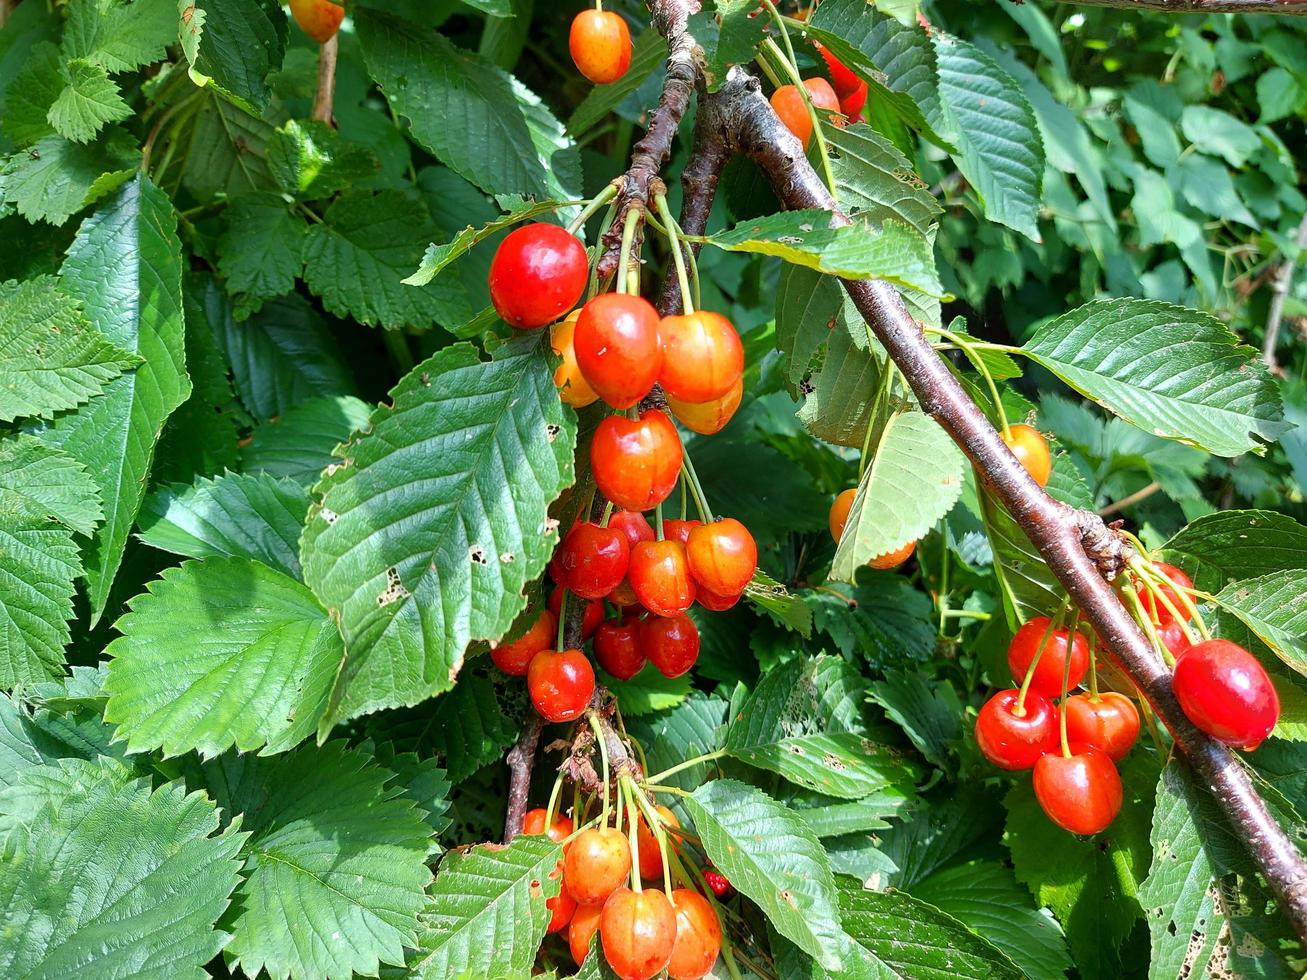 cereja doce amadurece em um galho no jardim. frutos vermelhos maduros e verdes. foto